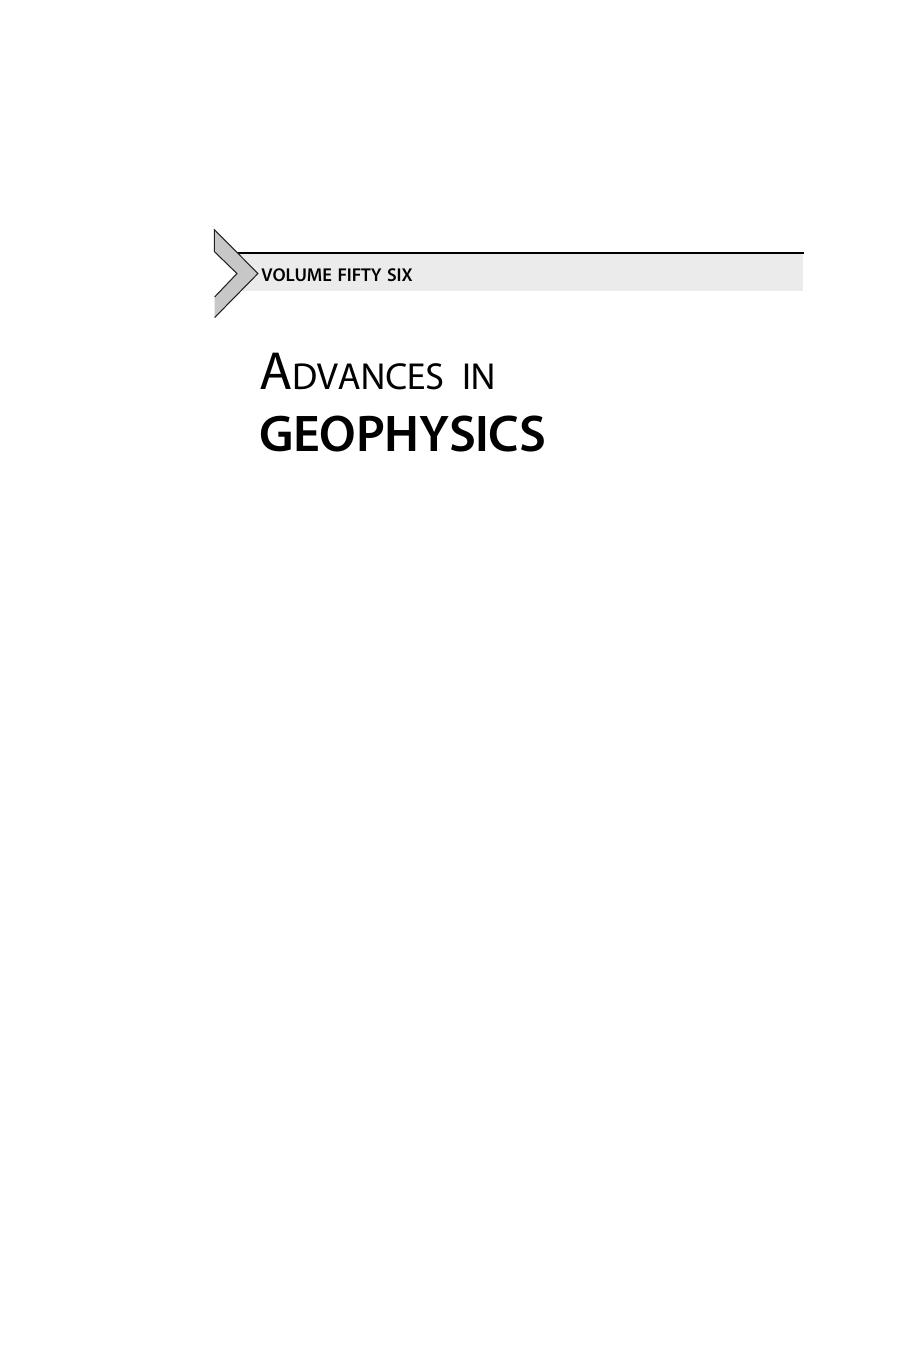 Advances in geophysics ( PDFDrive.com )2015